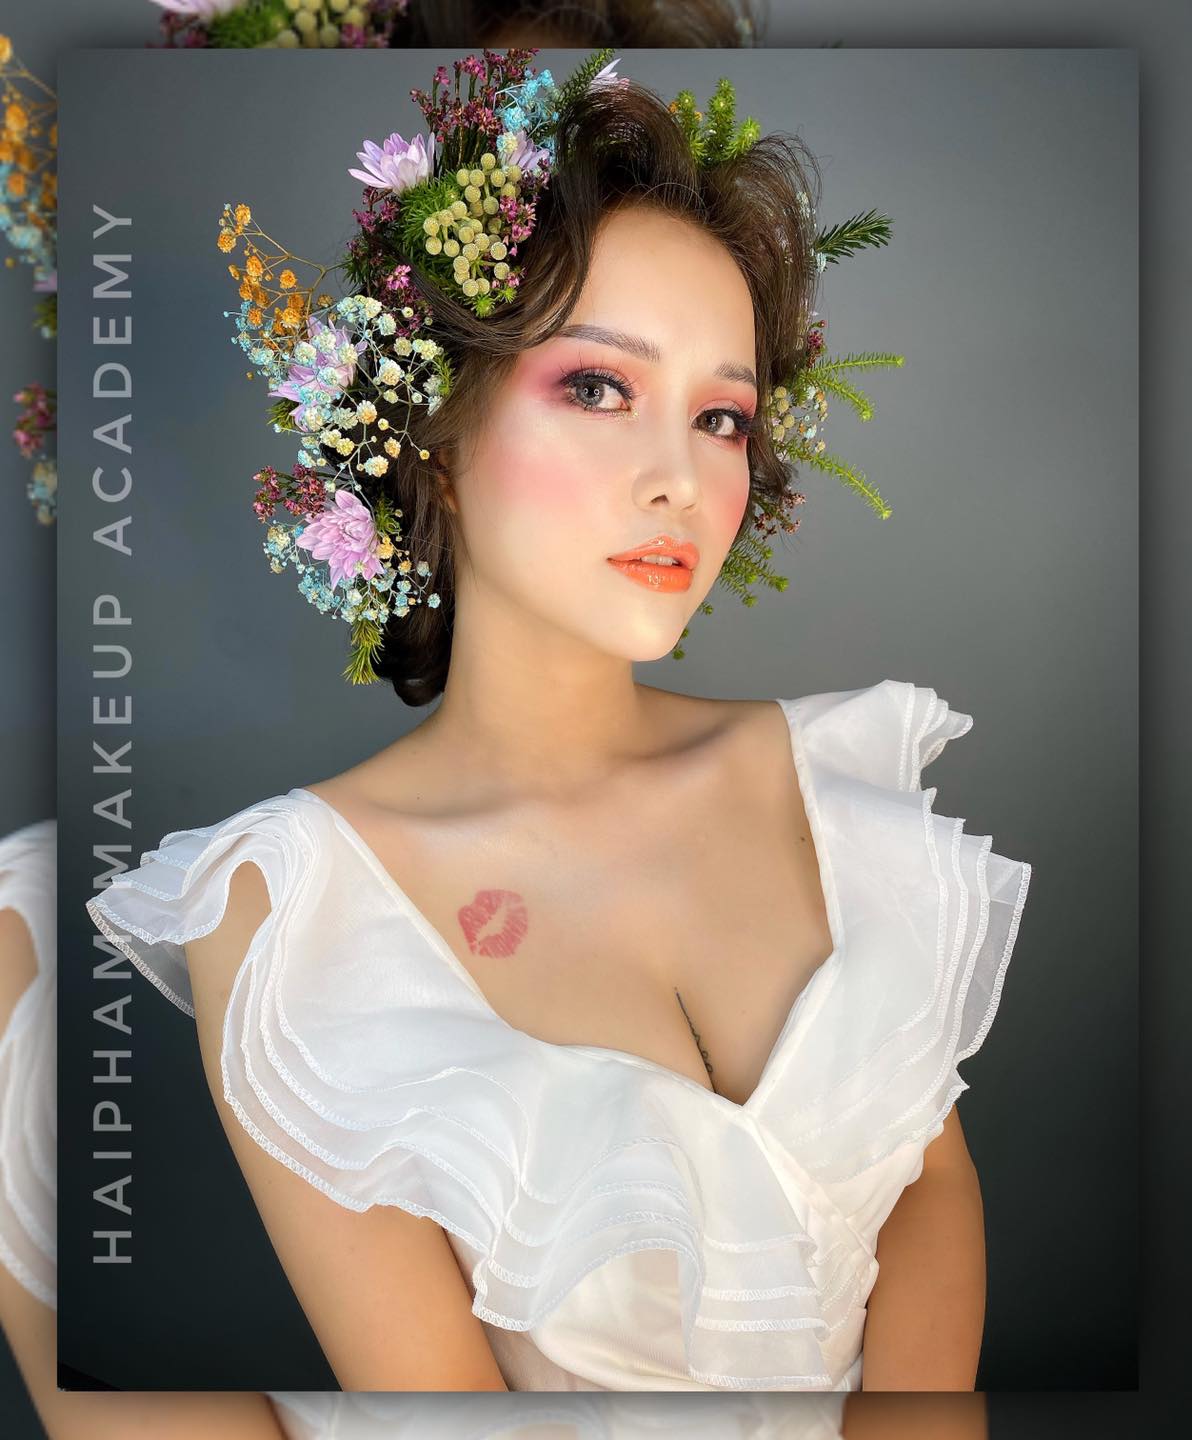 Top 7 tiệm trang điểm cô dâu đẹp nhất tại Đồng Nai -  Hải Phạm MakeUp & Wedding Store